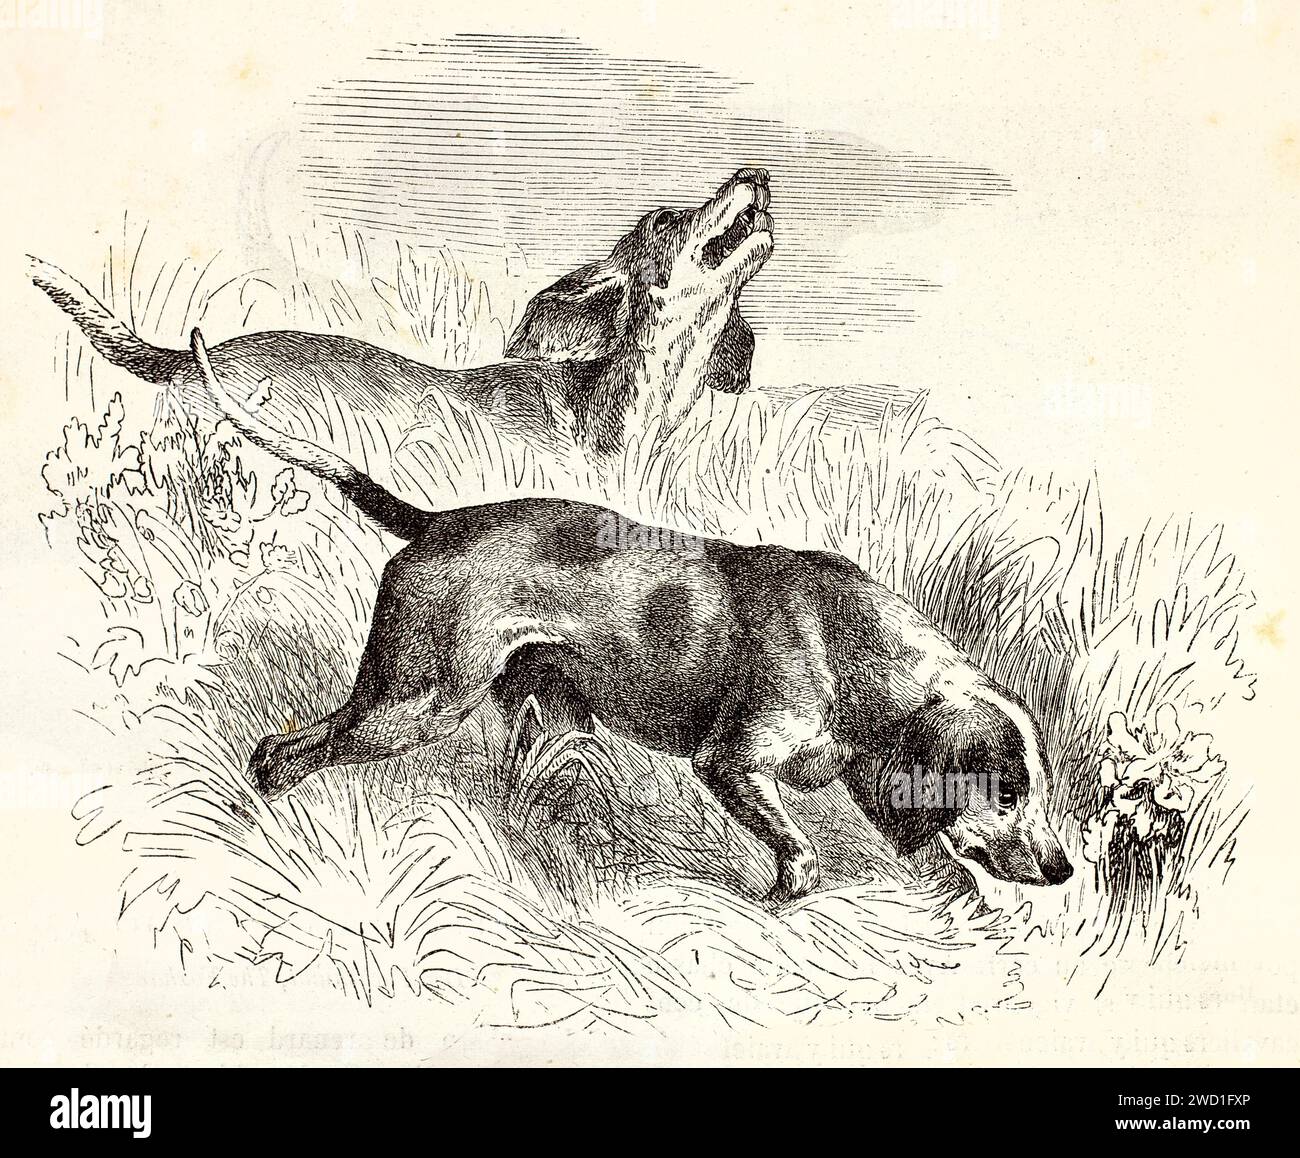 Alte gravierte Illustration von englischen Foxhounds, die schnüffeln. Erstellt von Wells, veröffentlicht auf Brehm, Les Mammifers, Baillière et fils, Paris, 1878 Stockfoto